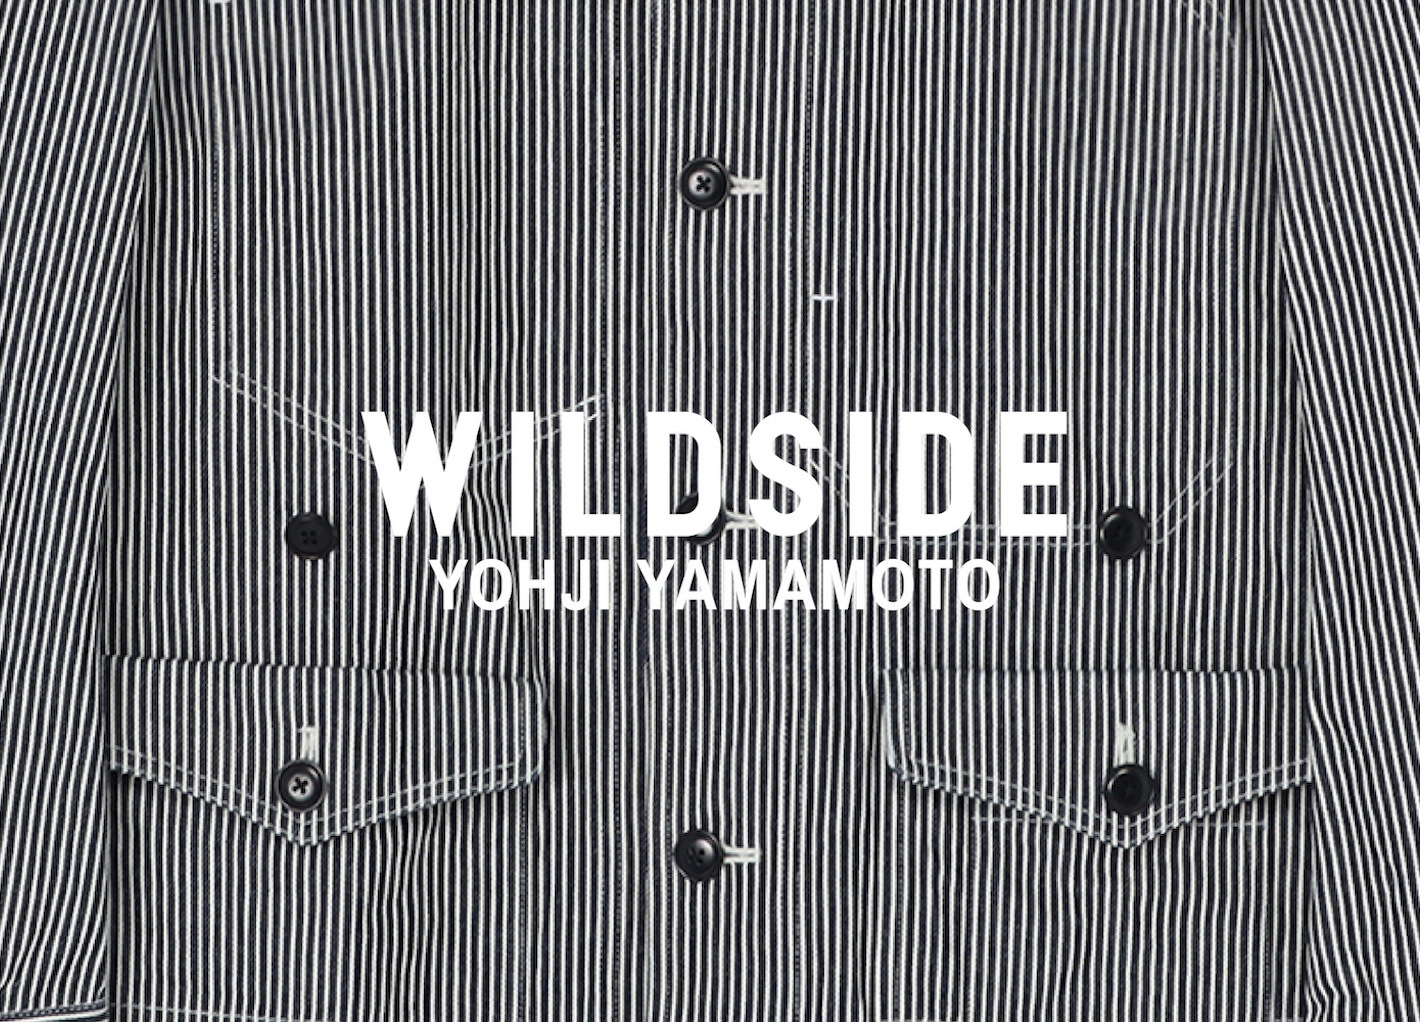 6月7日発売 WILDSIDE YOHJI YAMAMOTO ”ヒッコリーストライプデニム”